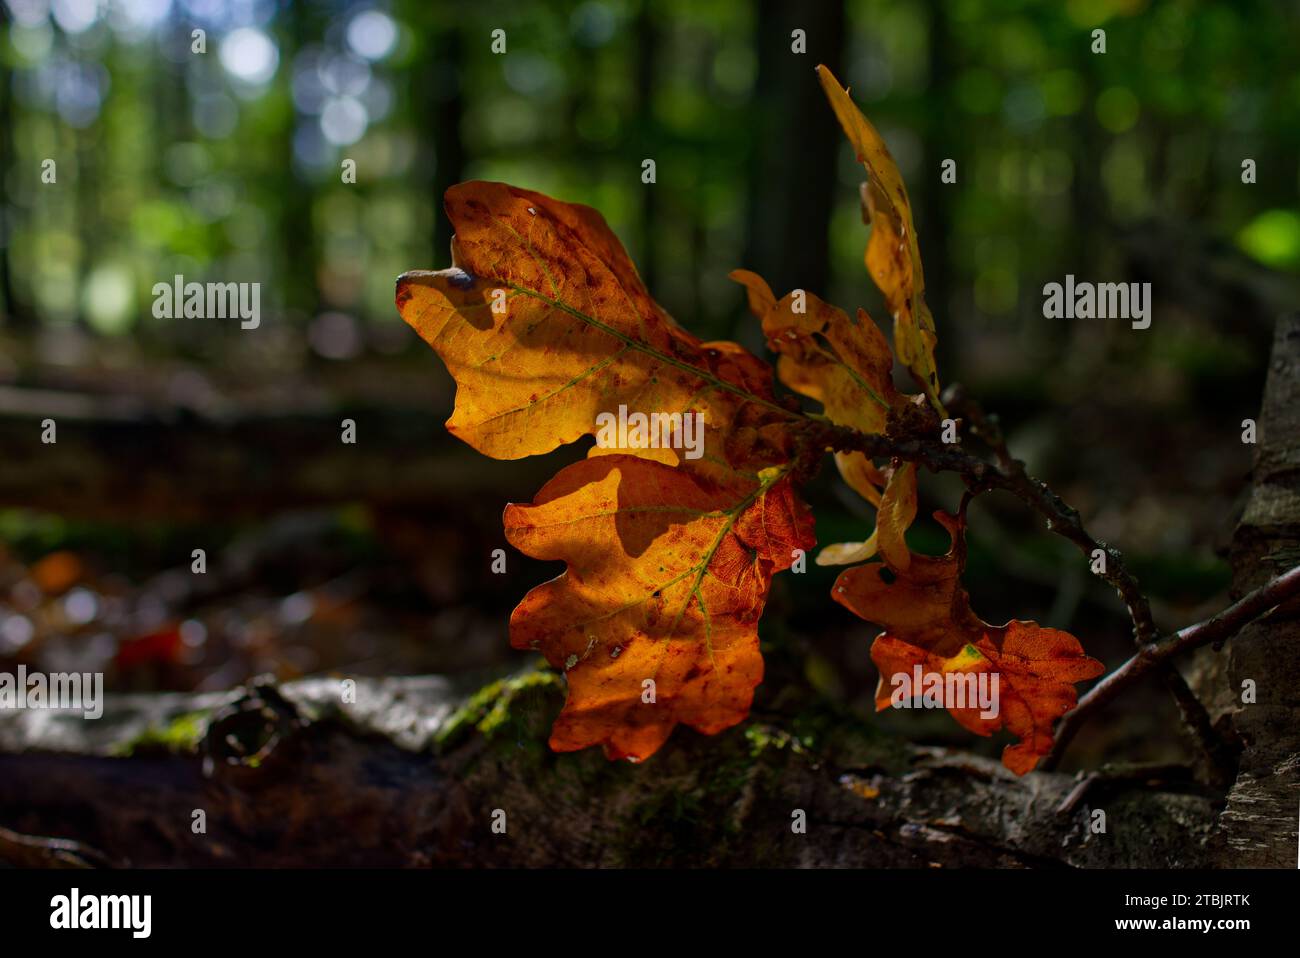 Nahaufnahme der Eichenblätter, die auf dem Boden liegen, in hellen orange und braunen Farben mit verschwommenem Wald im Hintergrund Stockfoto